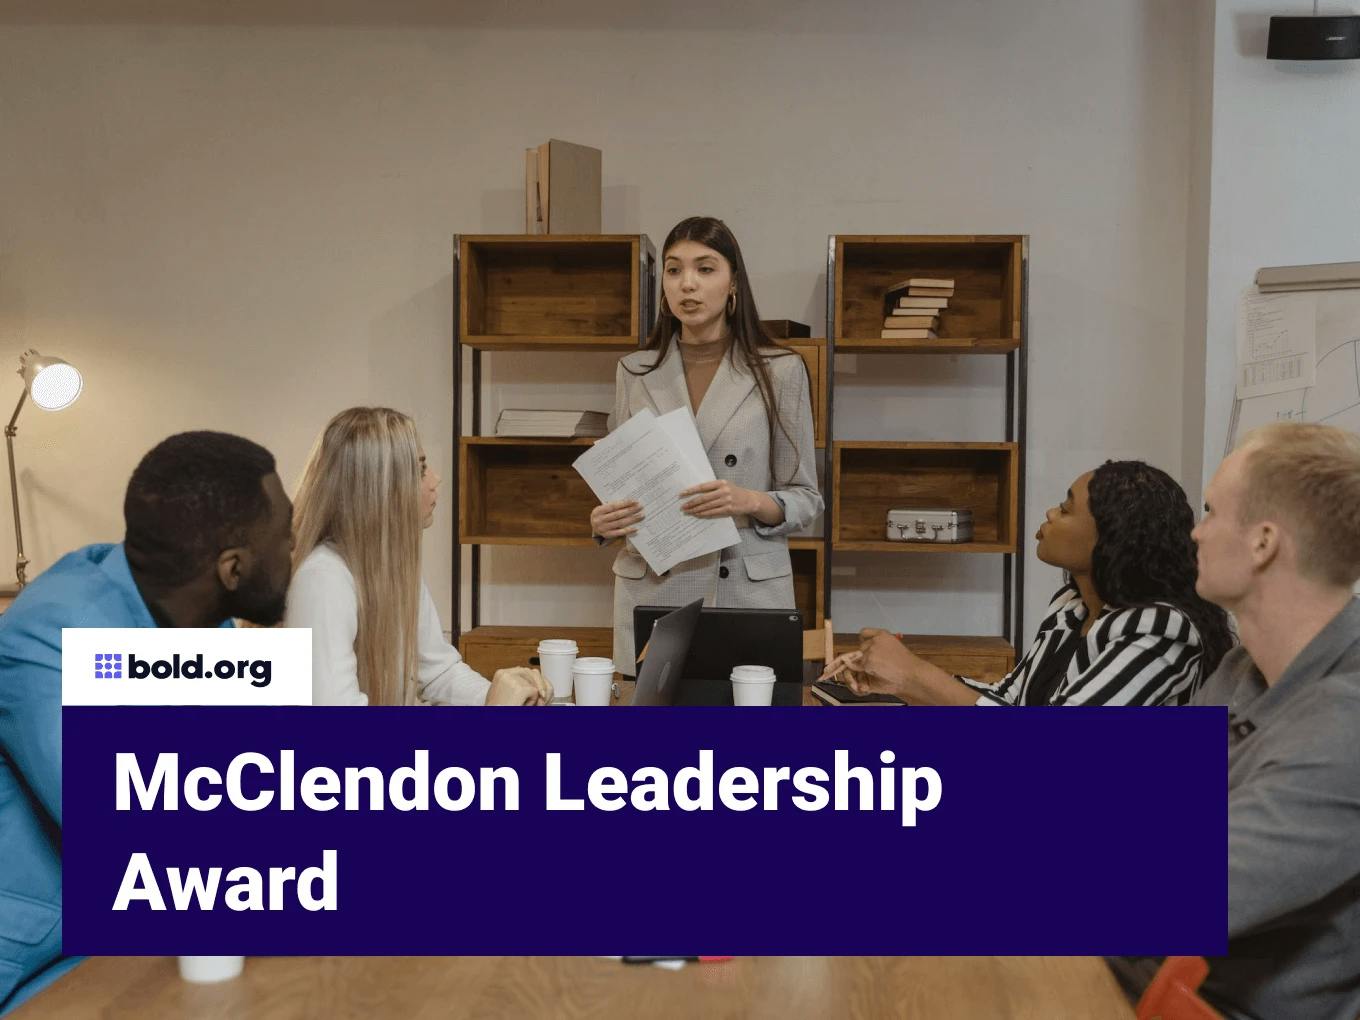 McClendon Leadership Award